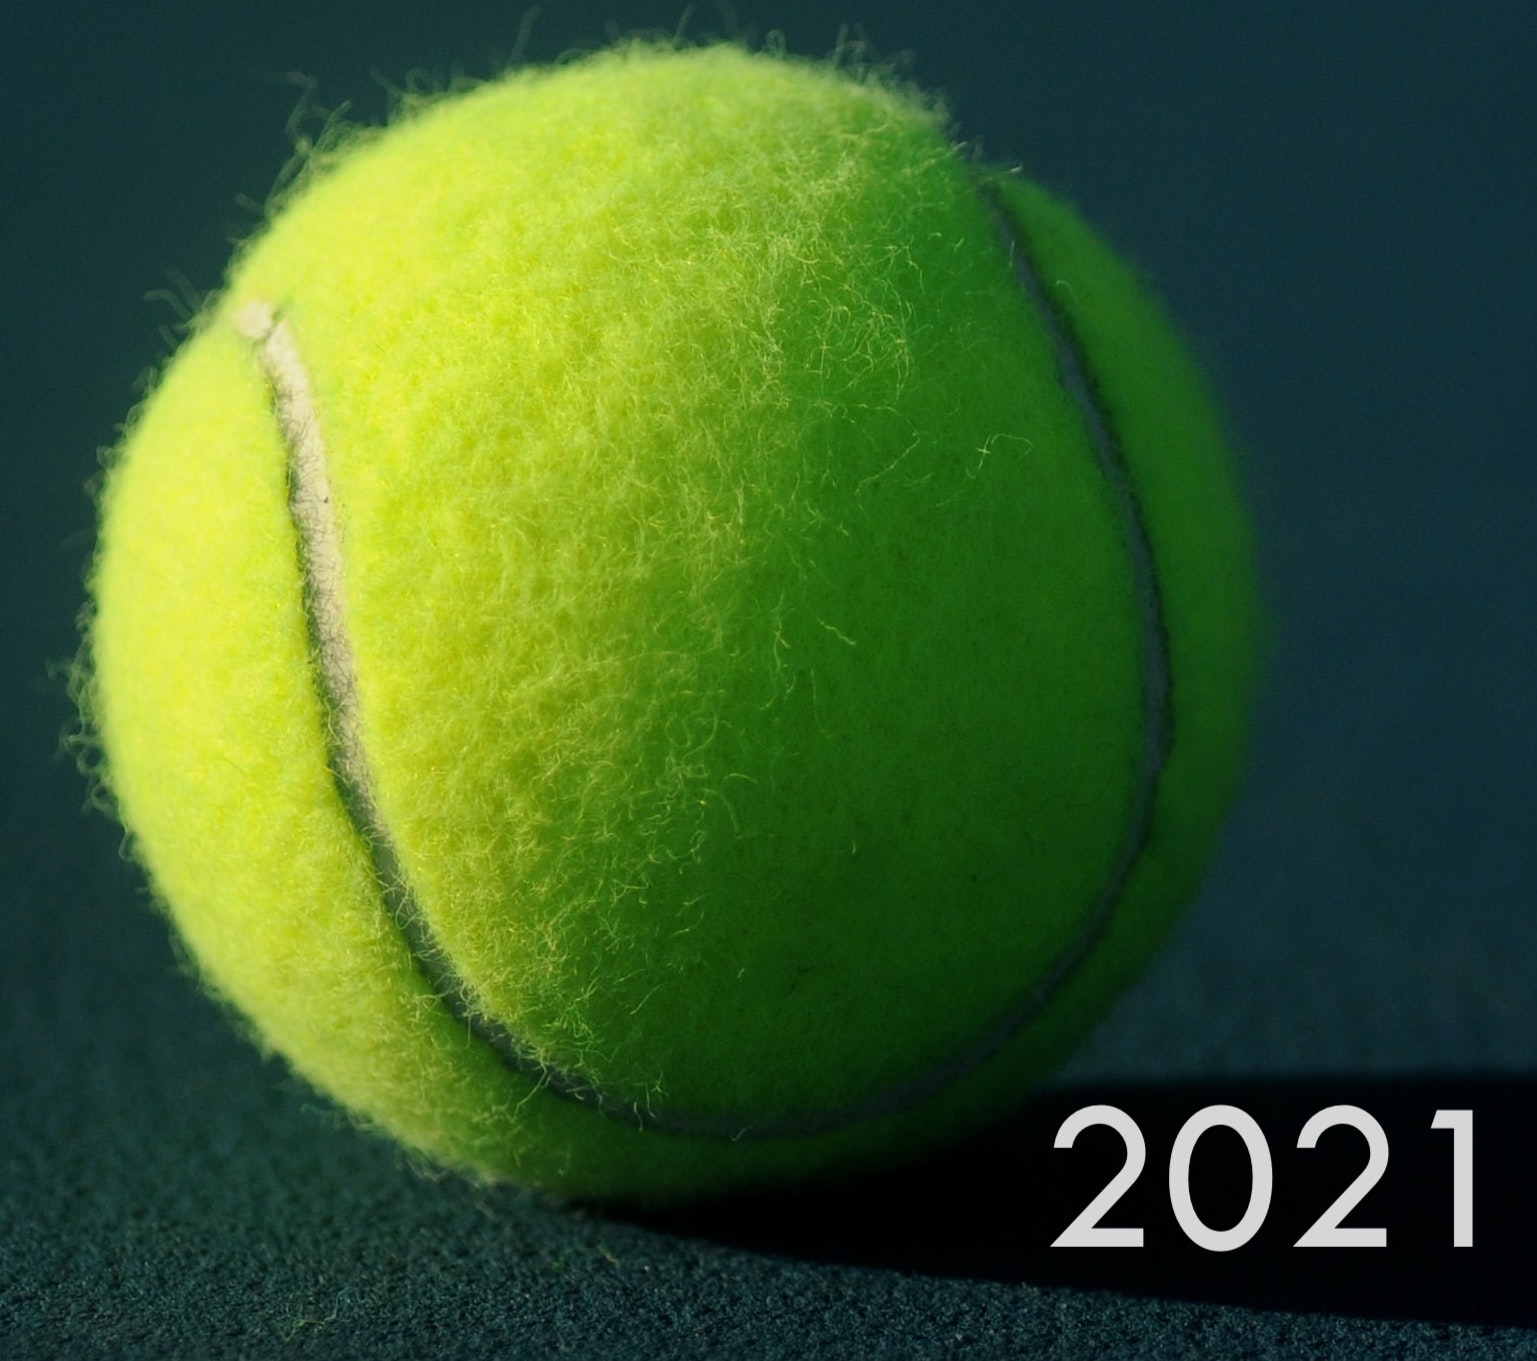 Ball_2021_Logo.jpg